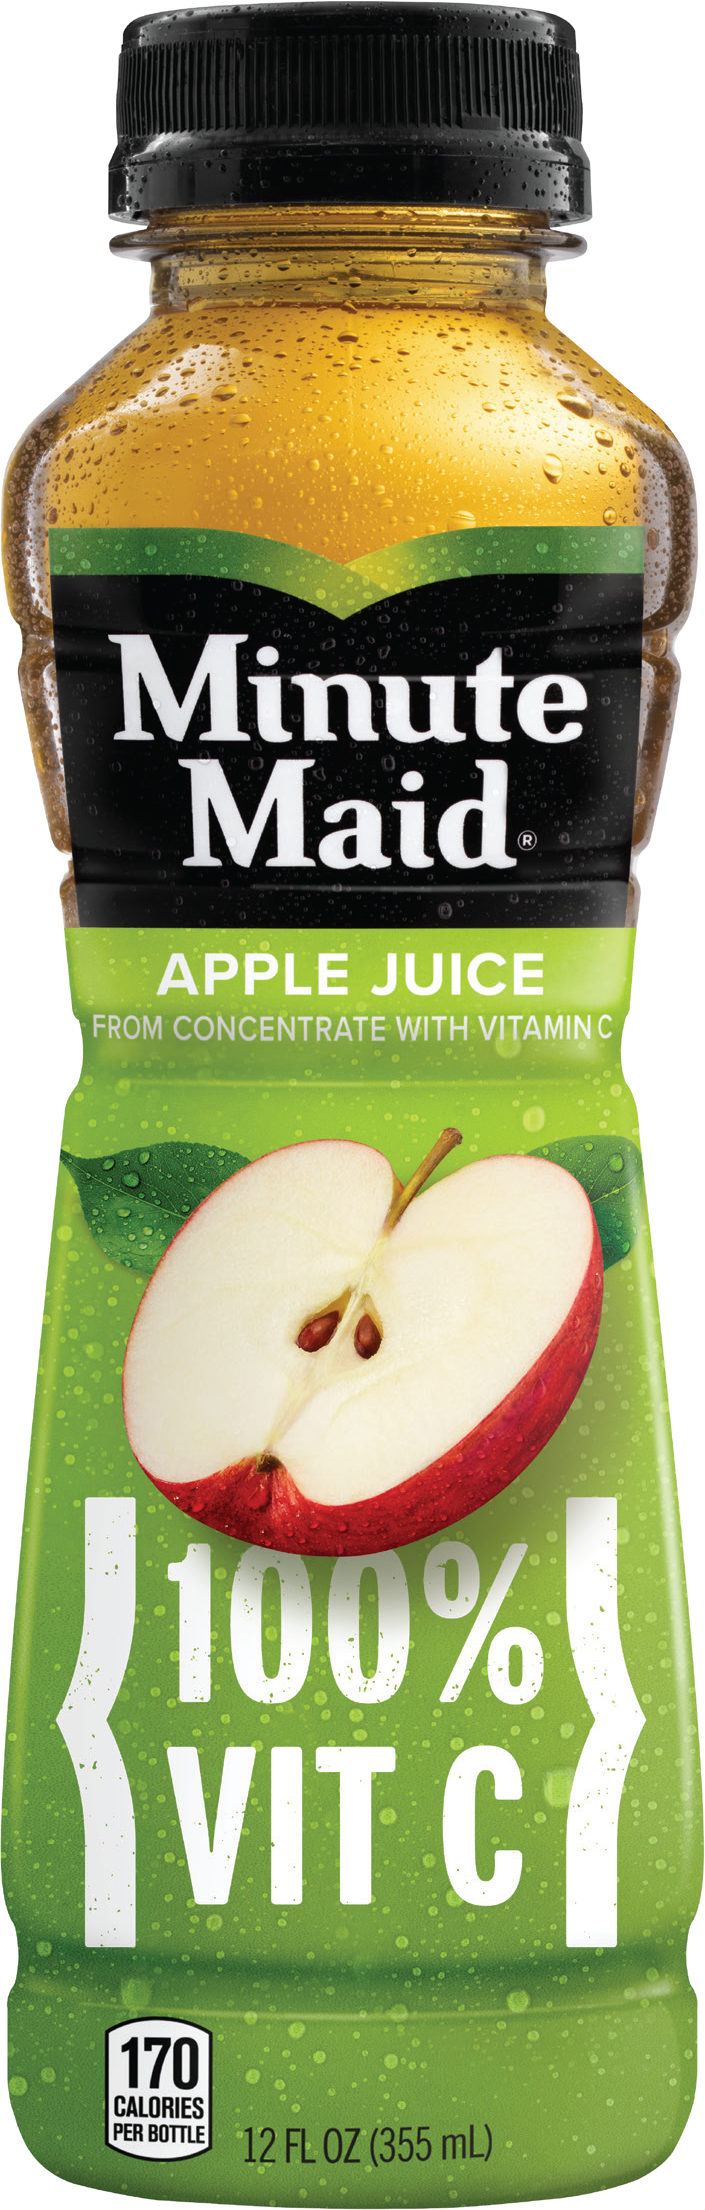 12 oz minute maid apple juice